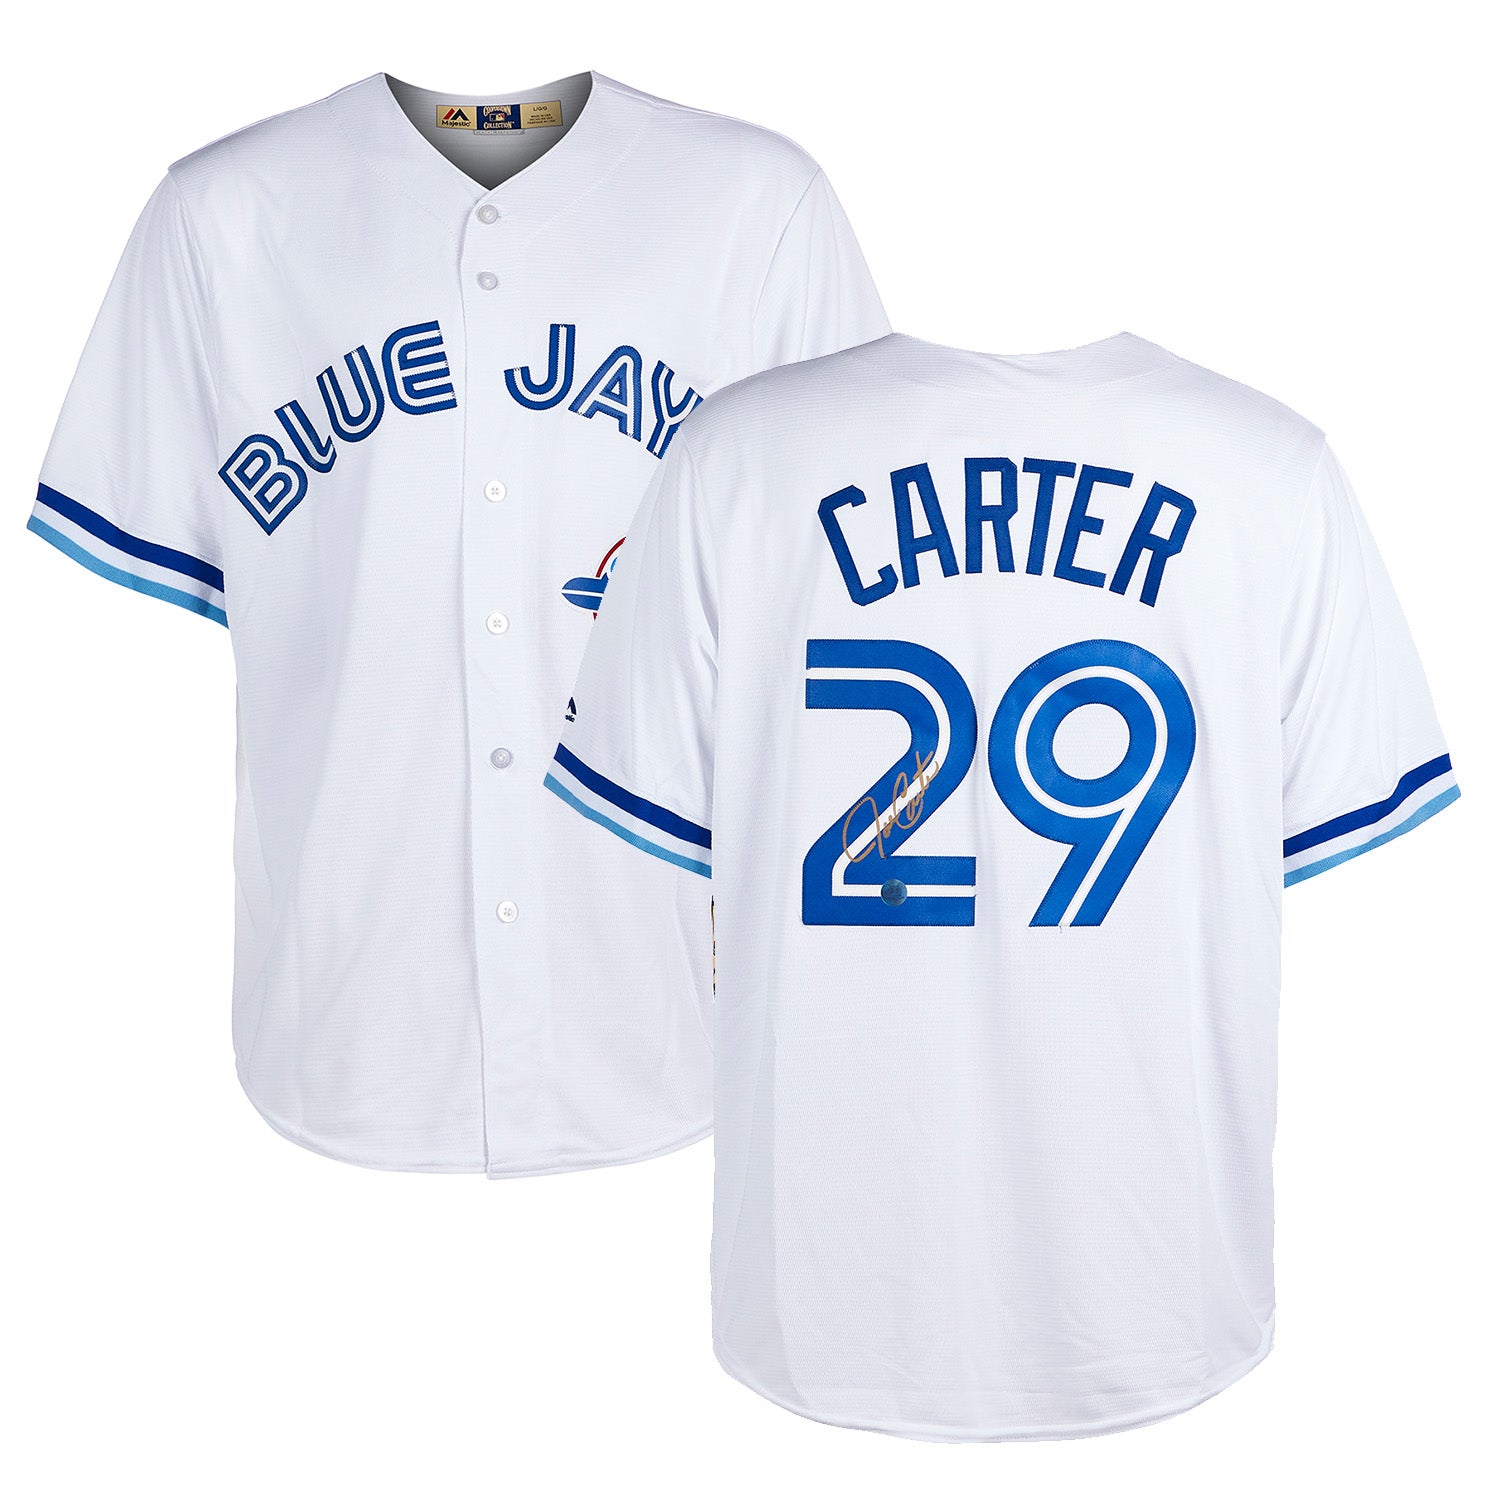 Joe Carter Toronto Blue Jays Signed Vintage Cooperstown Jersey